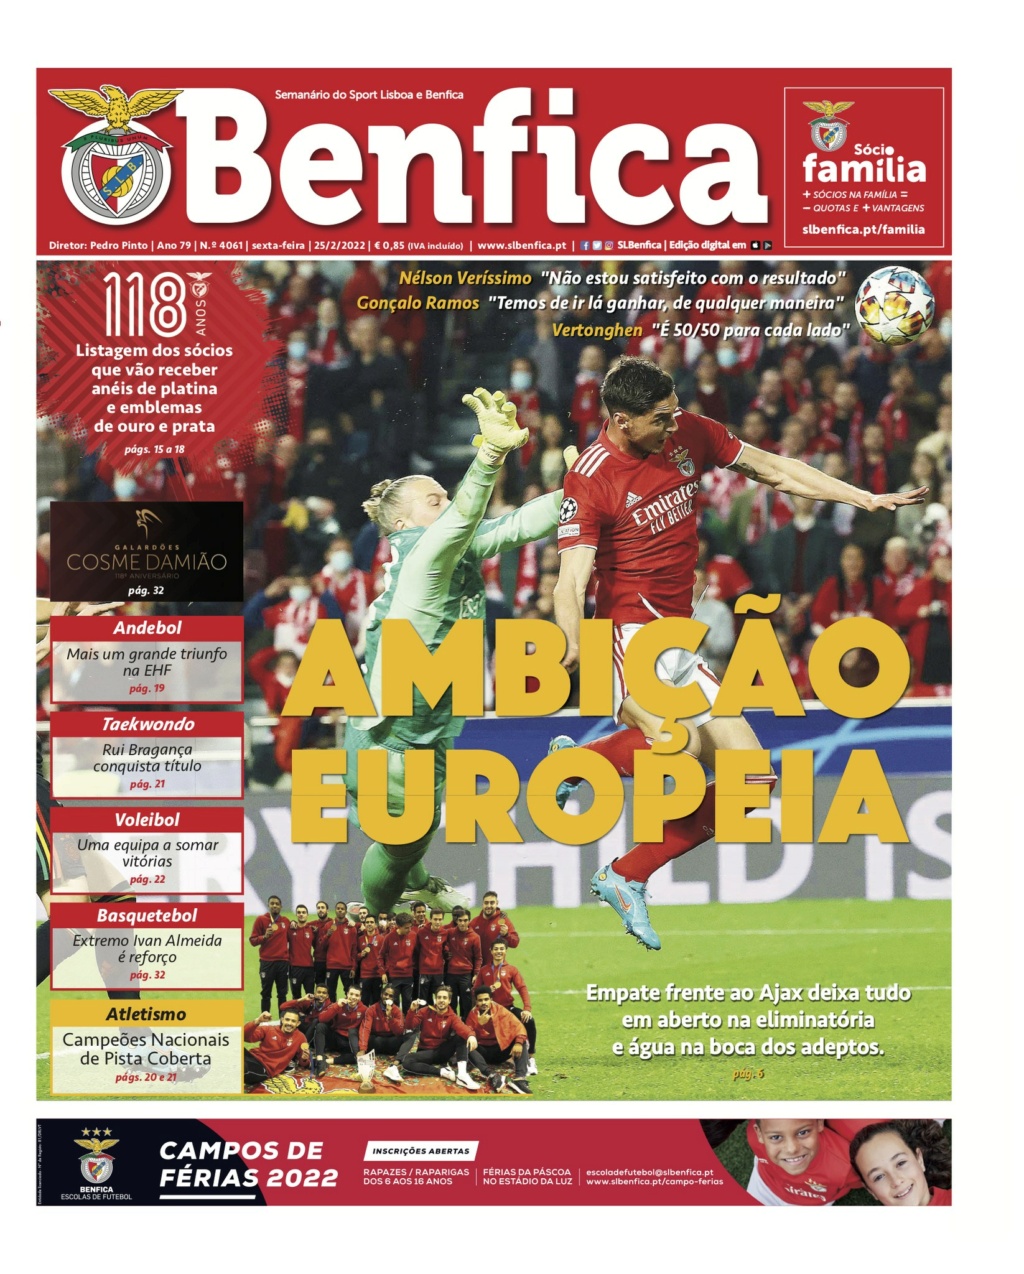 Champions League 2021/22 » Viertelfinale » 05.04.2022 21:00 Uhr » SL Benfica - FC Liverpool - Seite 9 11-1410